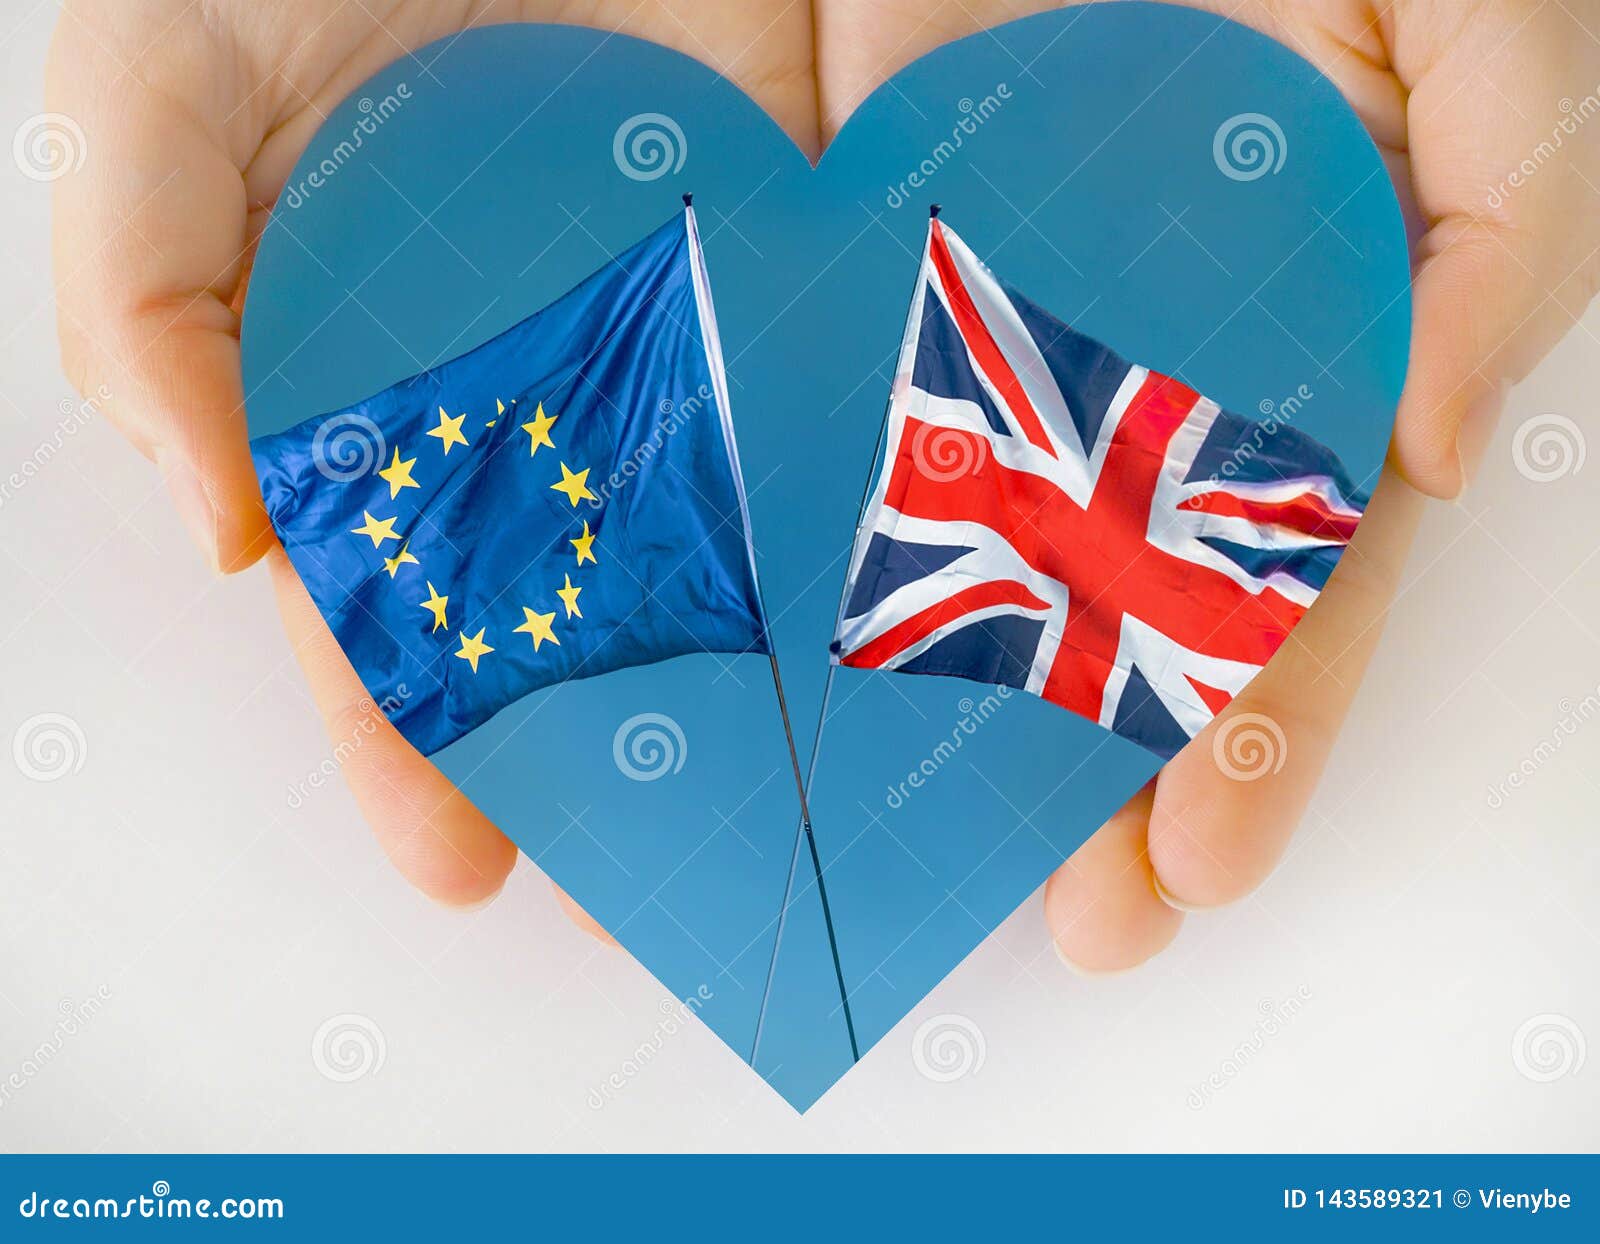 european union and uk flags, brexit eu concept